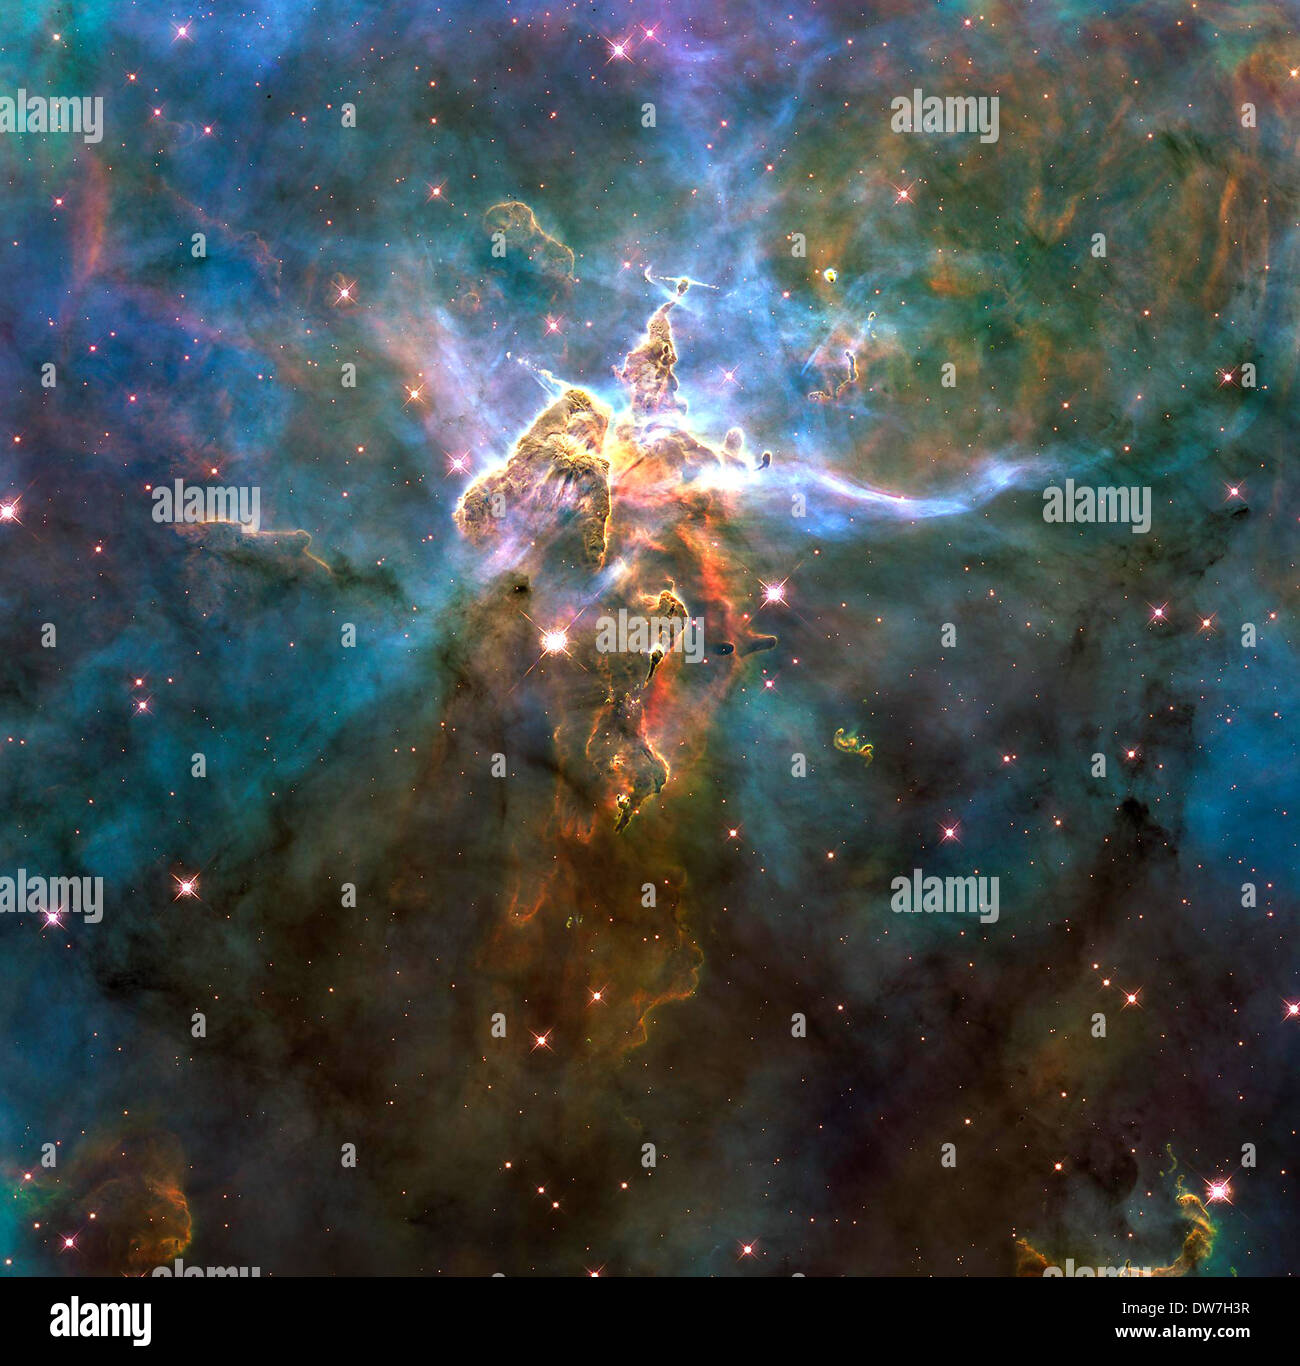 Carina Nebula Galaxy, NASA Hubble image of Carina Nebula Galaxy Stock Photo